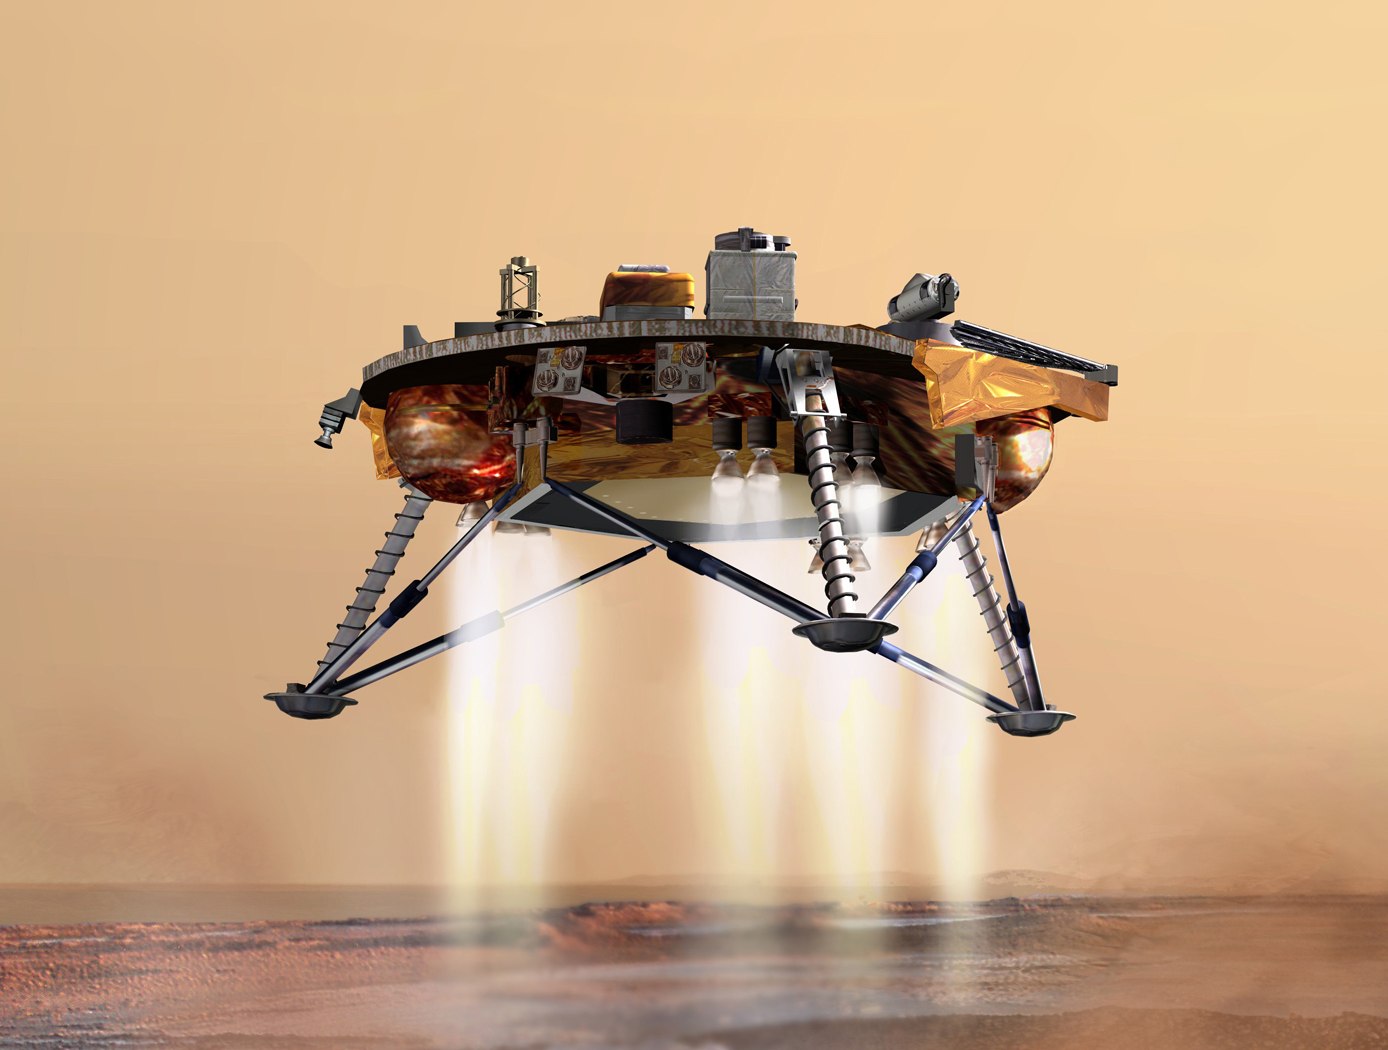 Vehicle landing on Mars